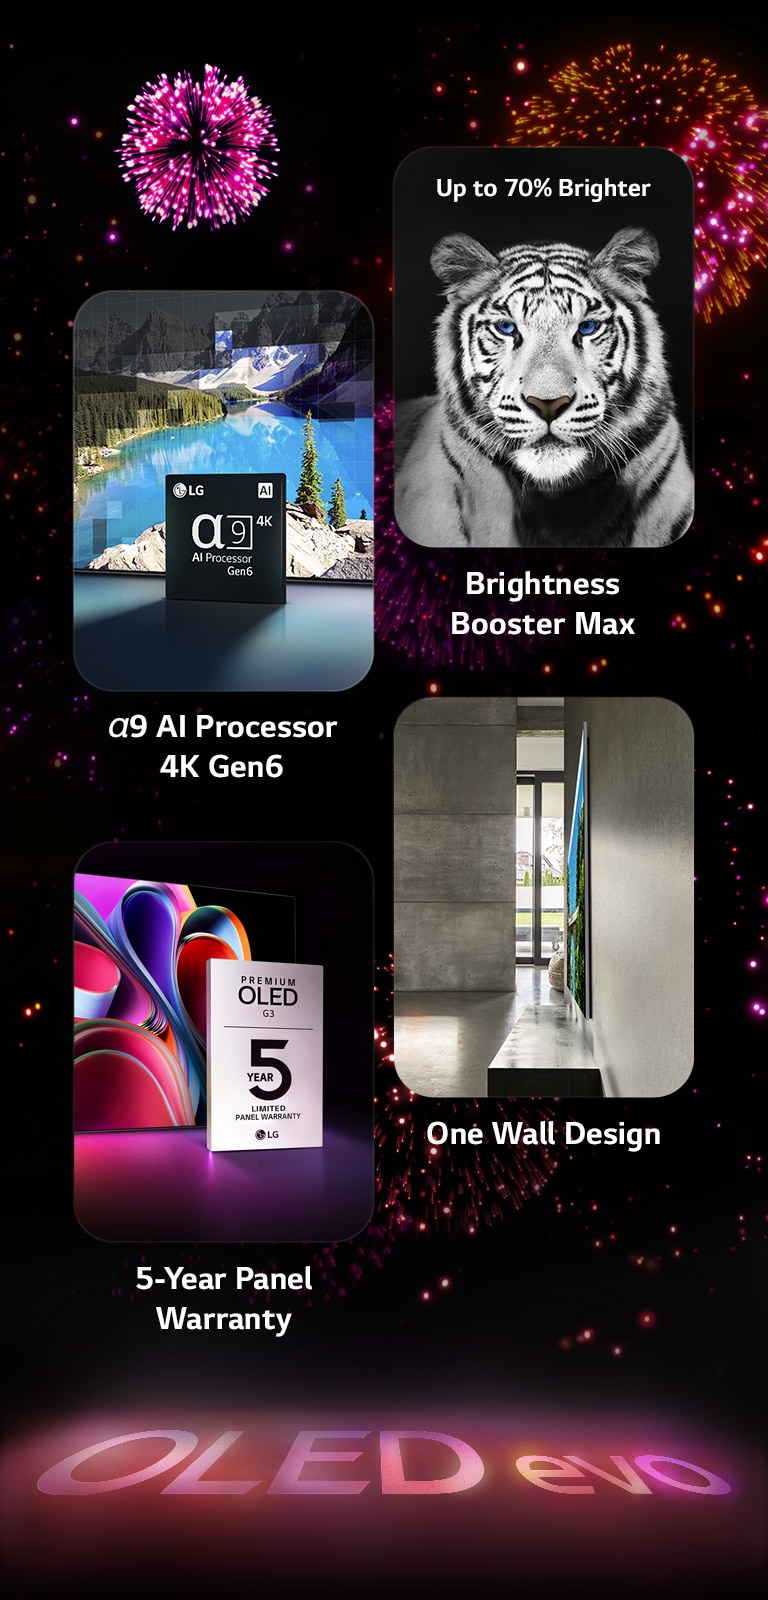 En bild som visar de viktigaste funktionerna hos LG OLED evo G3 mot en svart bakgrund med ett rosa och lila fyrverkerier. Det är en rosa reflektion från fyrverkeriet på golvet, och där bildas orden “OLED evo.” I bilden finns en bild som föreställer a9 AI-processor 4K Gen6 med chipet som står framför en scen där det syns en sjö, och bilden blir behandlad med processorns teknik. För att presentera Brightness Booster Max visas en tiger med djup kontrast och ljusa vita färger. En bild som visar den femåriga panelgarantin innehåller logotypen för Premium OLED G3-garantin med skärmen i bakgrunden. En bild som presenterar One Wall-design visar LG OLED evo G3 som är monterad tätt mot väggen i ett grått vardagsrum i industridesignstil.